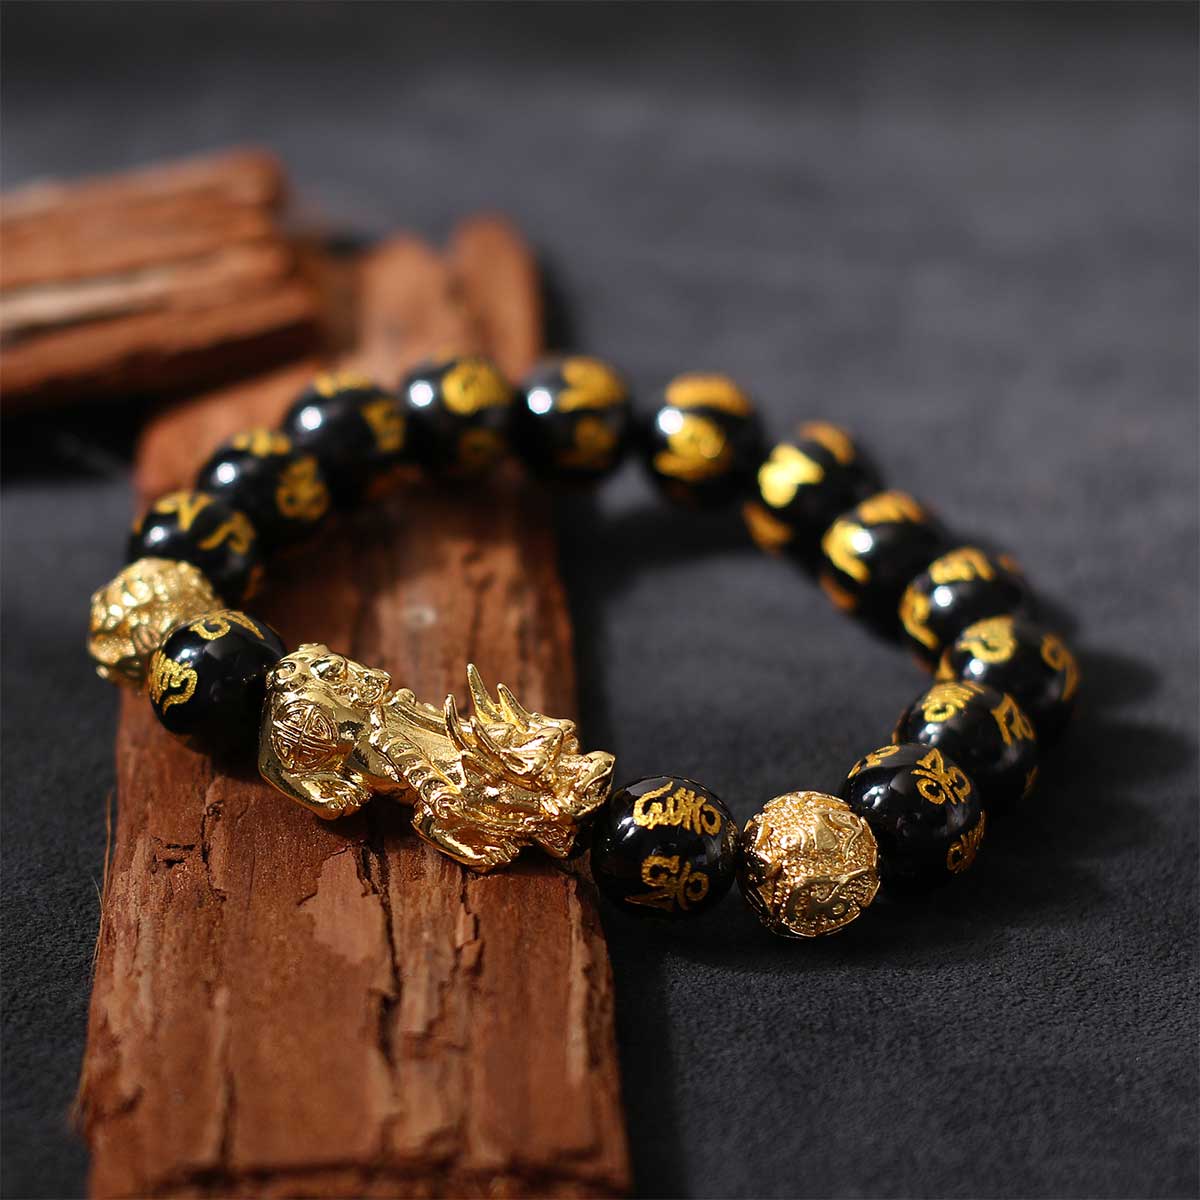 Black Obsidian Pixiu Feng Shui Wealth Bracelet - Bracelet - Inner Wisdom Store